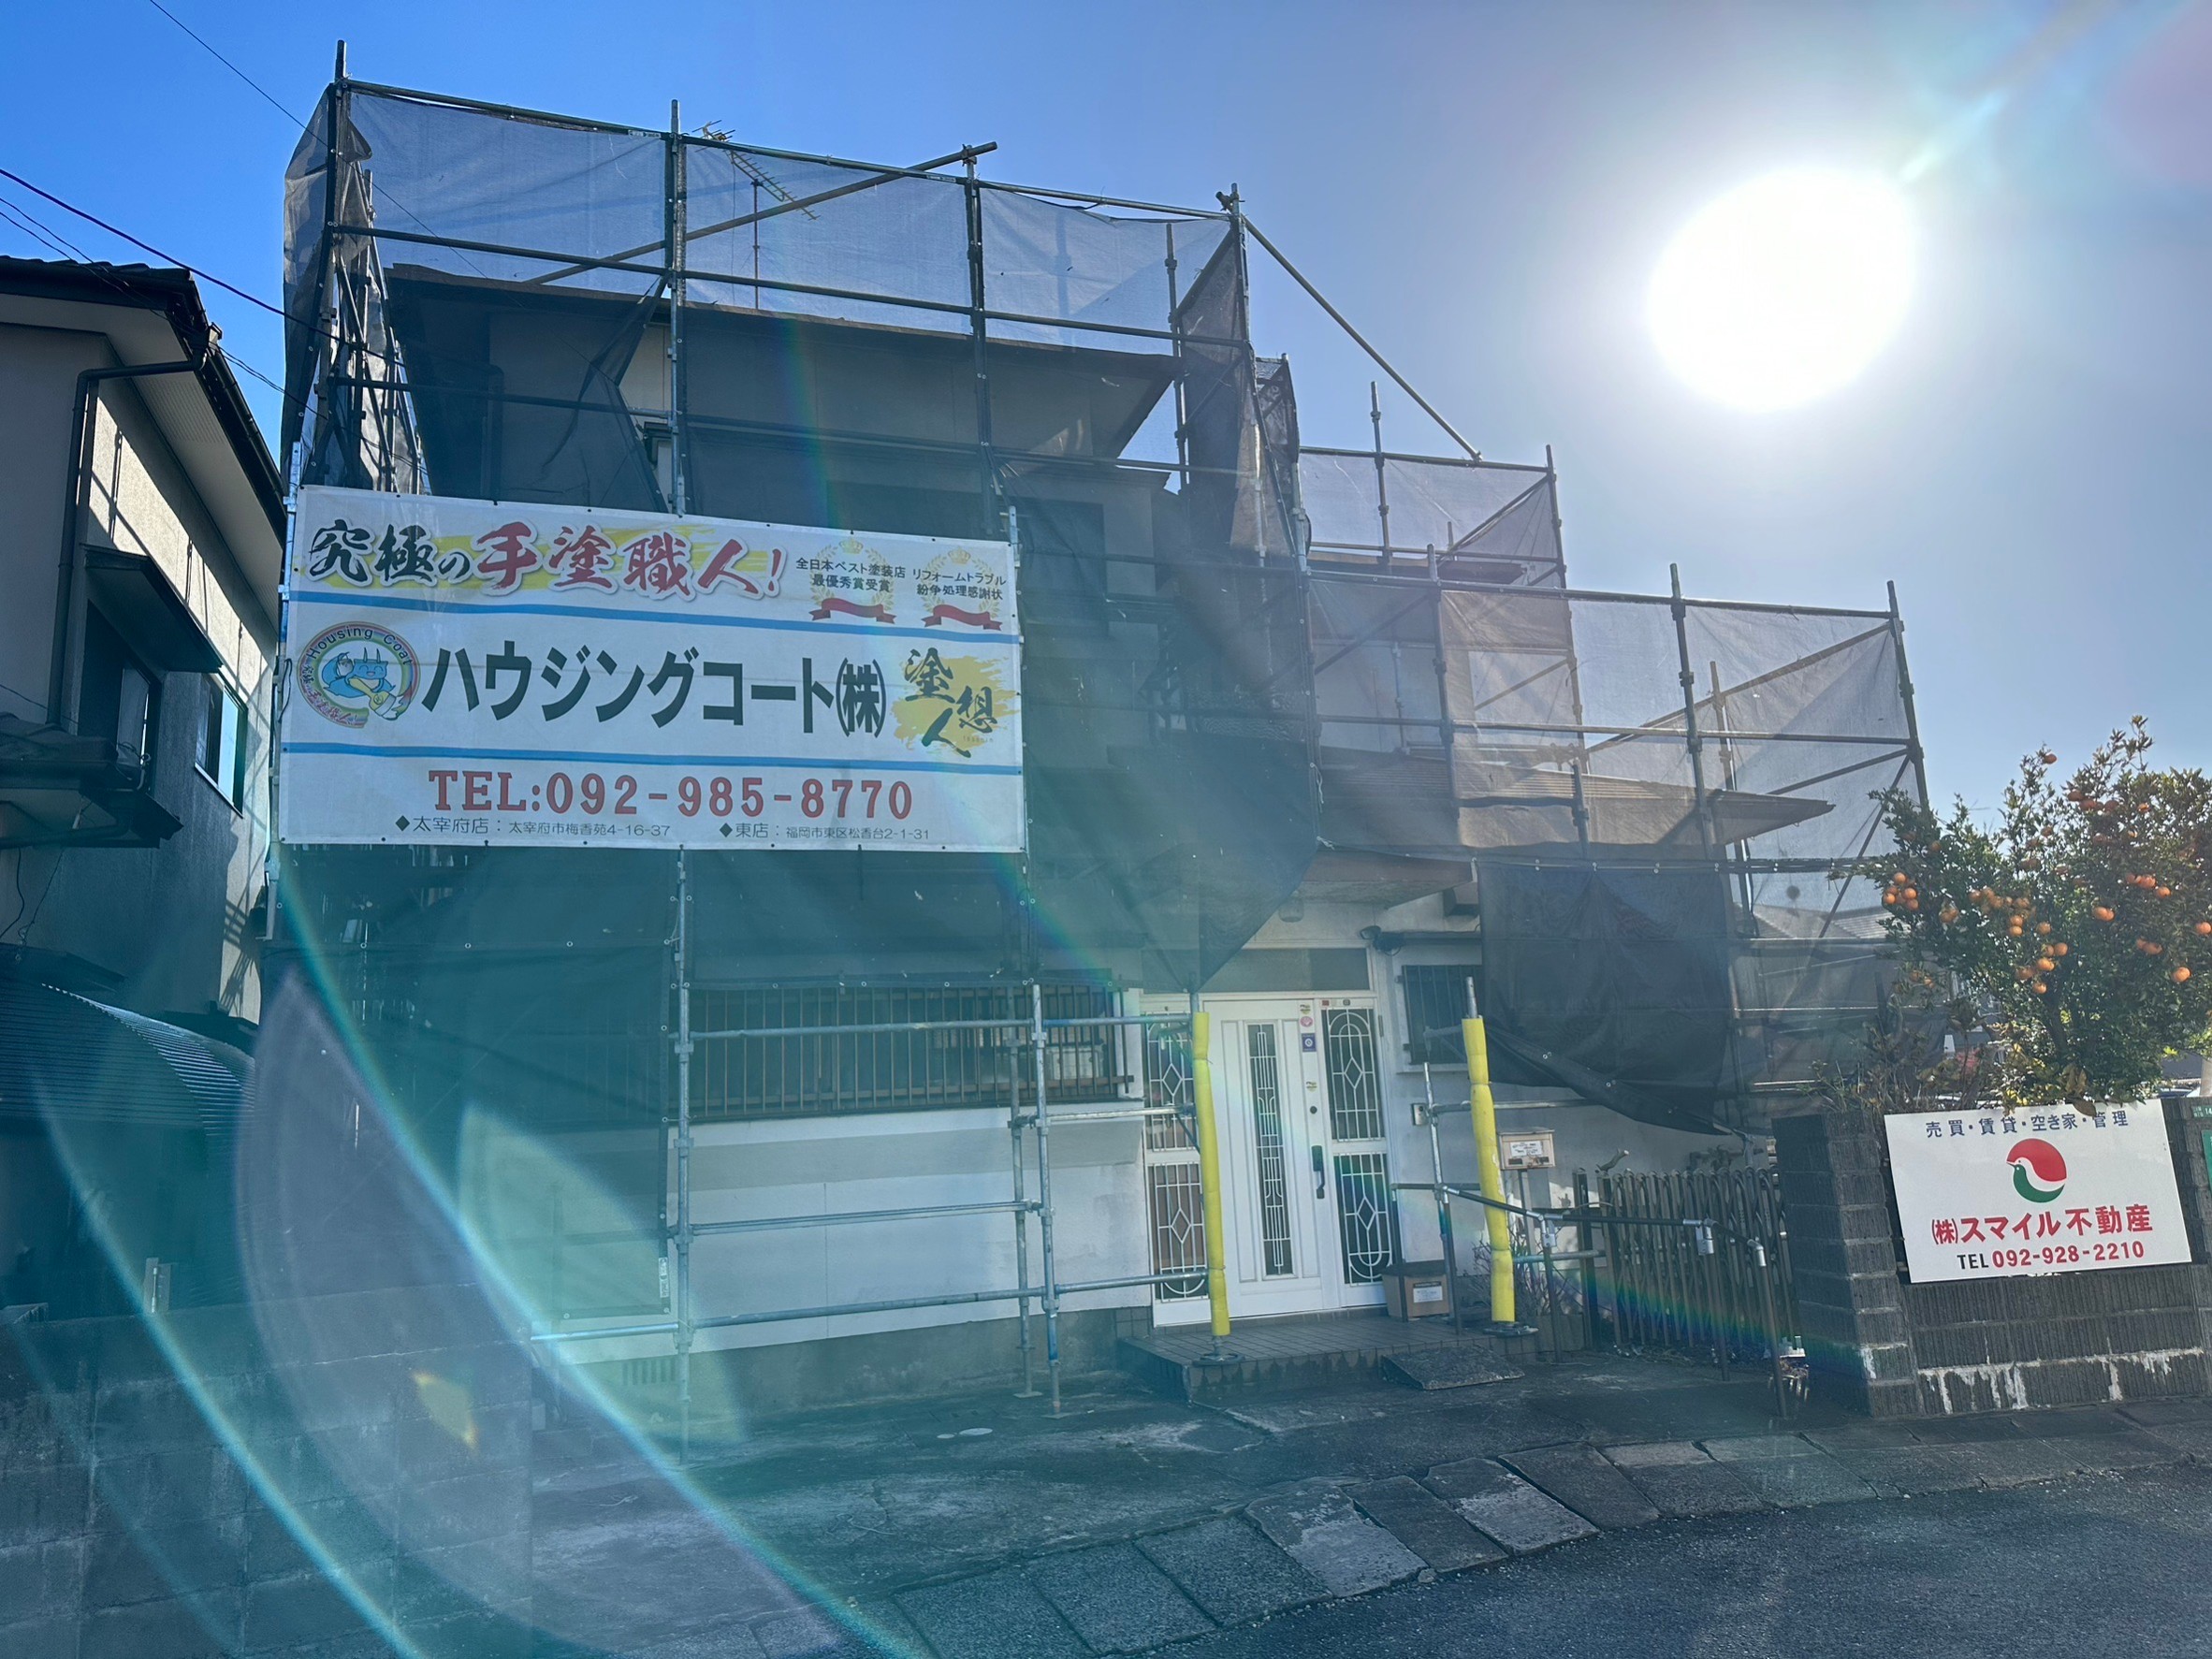 福岡県筑紫野市上古賀のN様邸で屋根外壁共にシリコン塗料を使用し塗装工事を進めています。12/8着工です。【HPより】